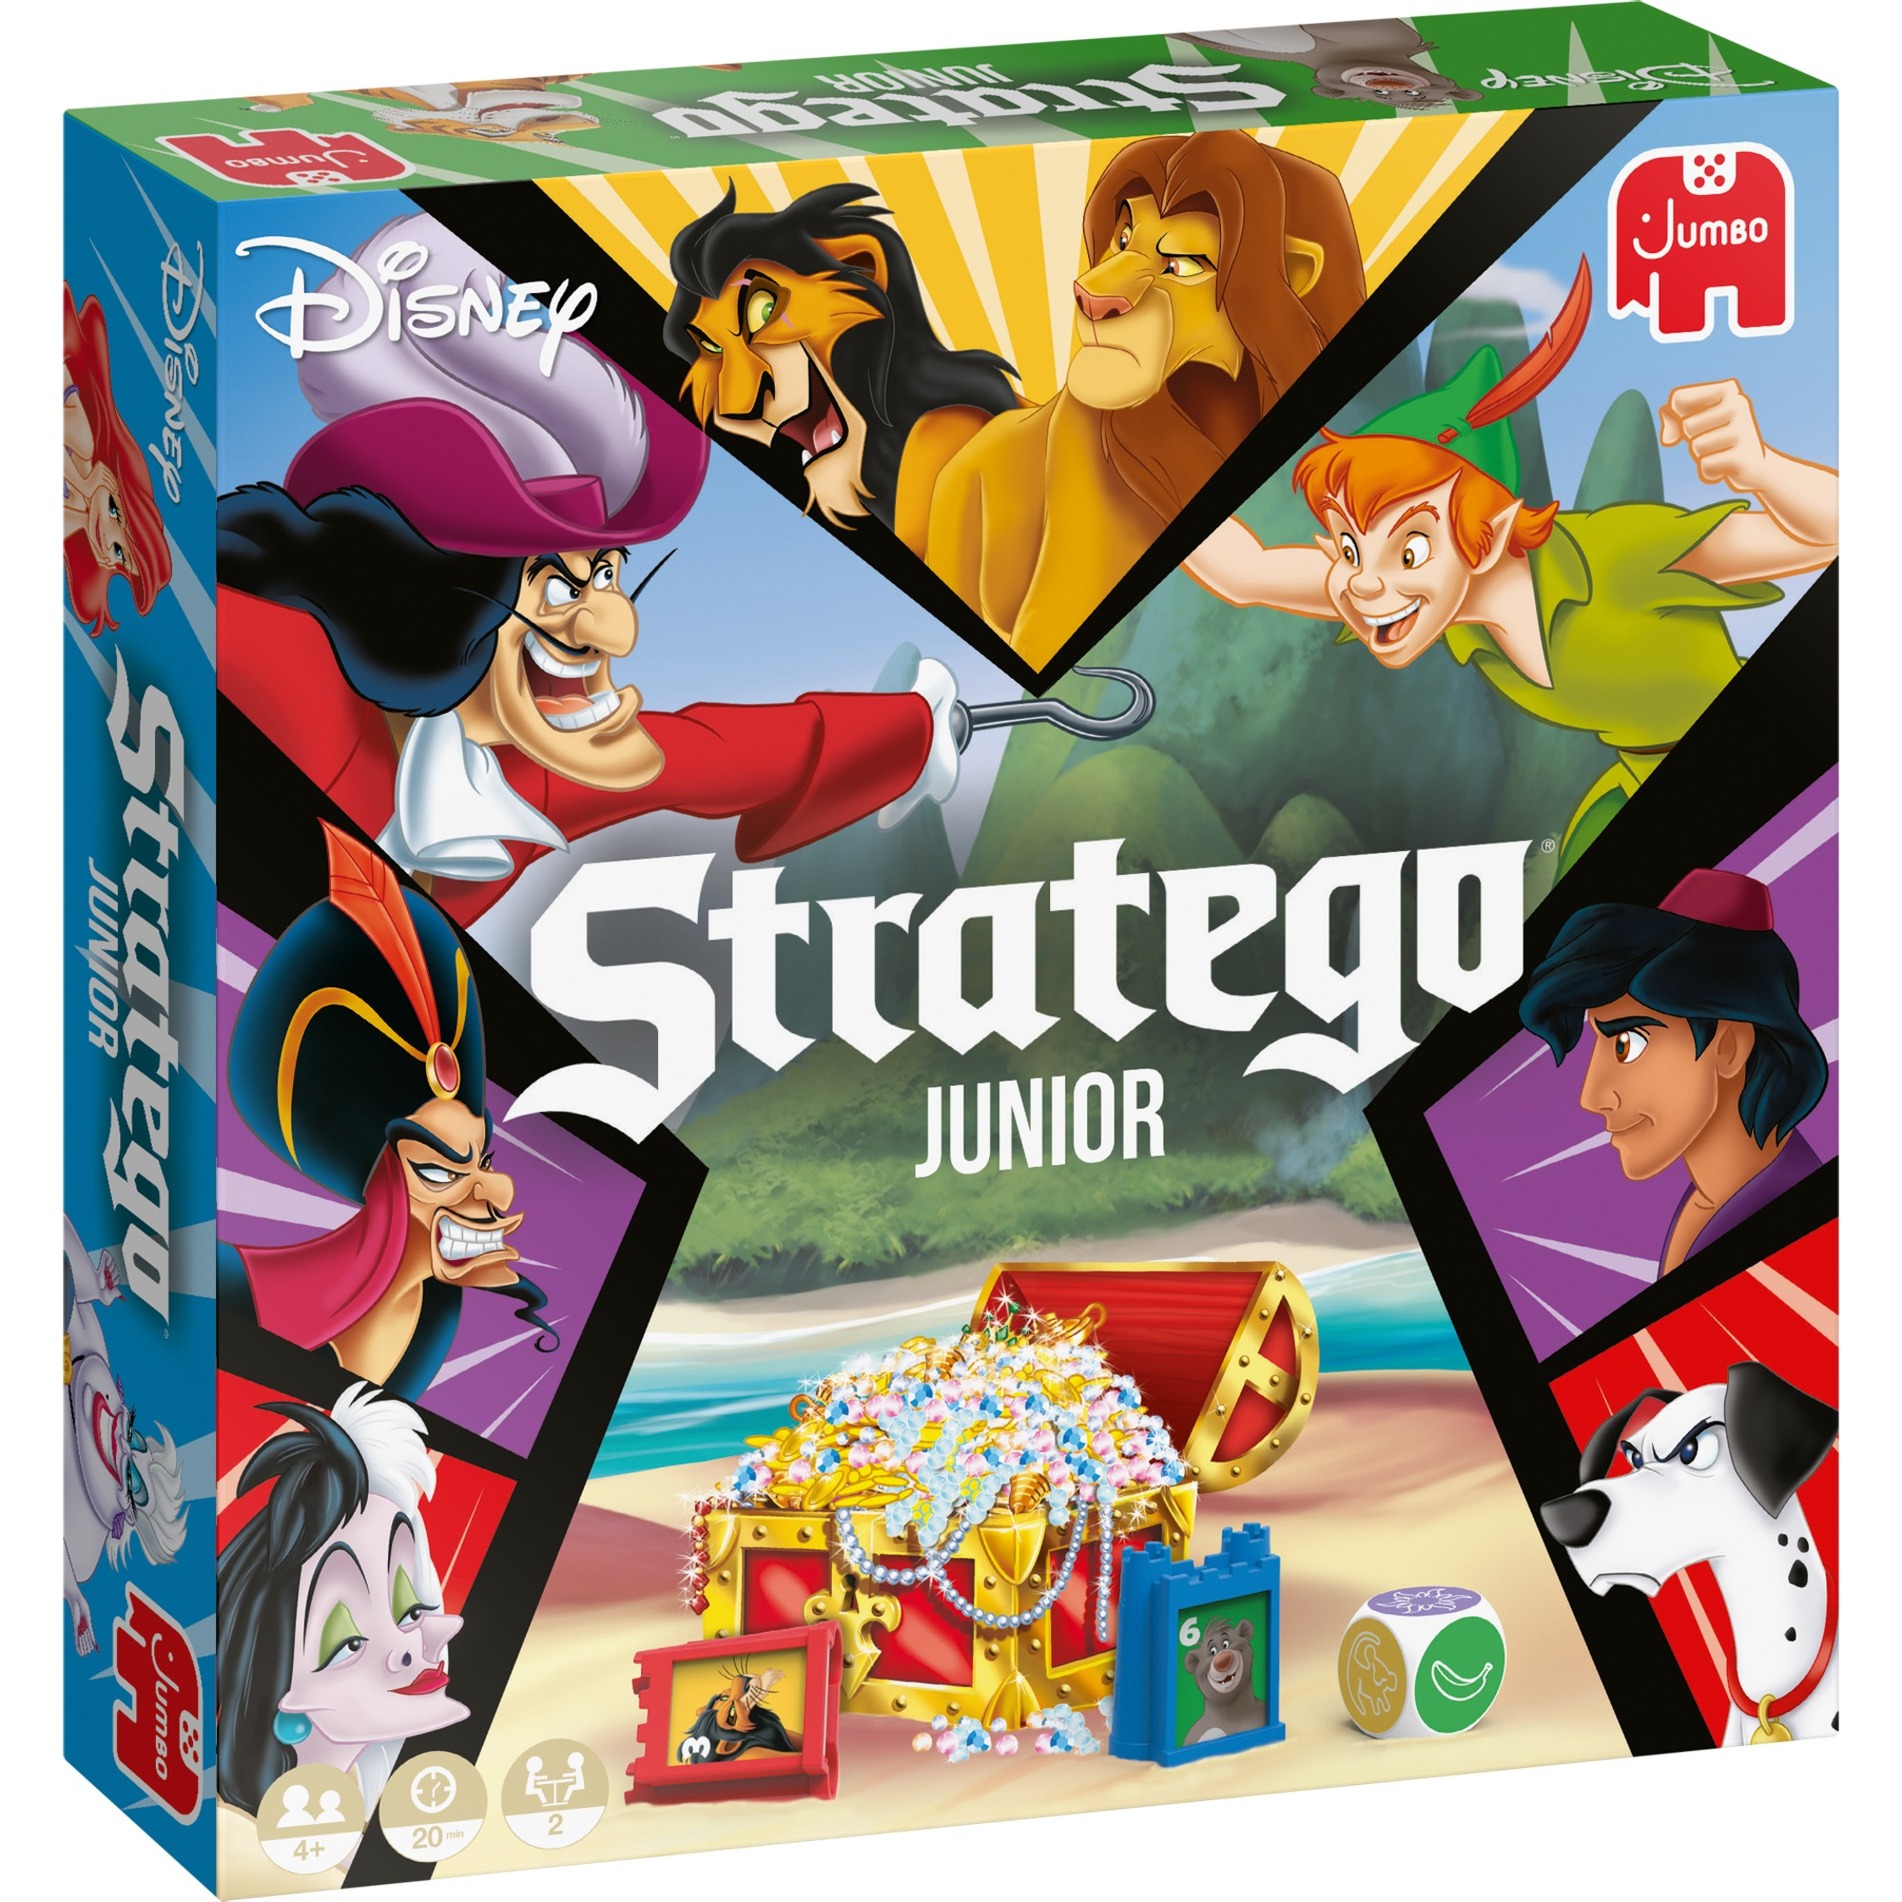 Image of Alternate - Stratego Junior Disney, Brettspiel online einkaufen bei Alternate